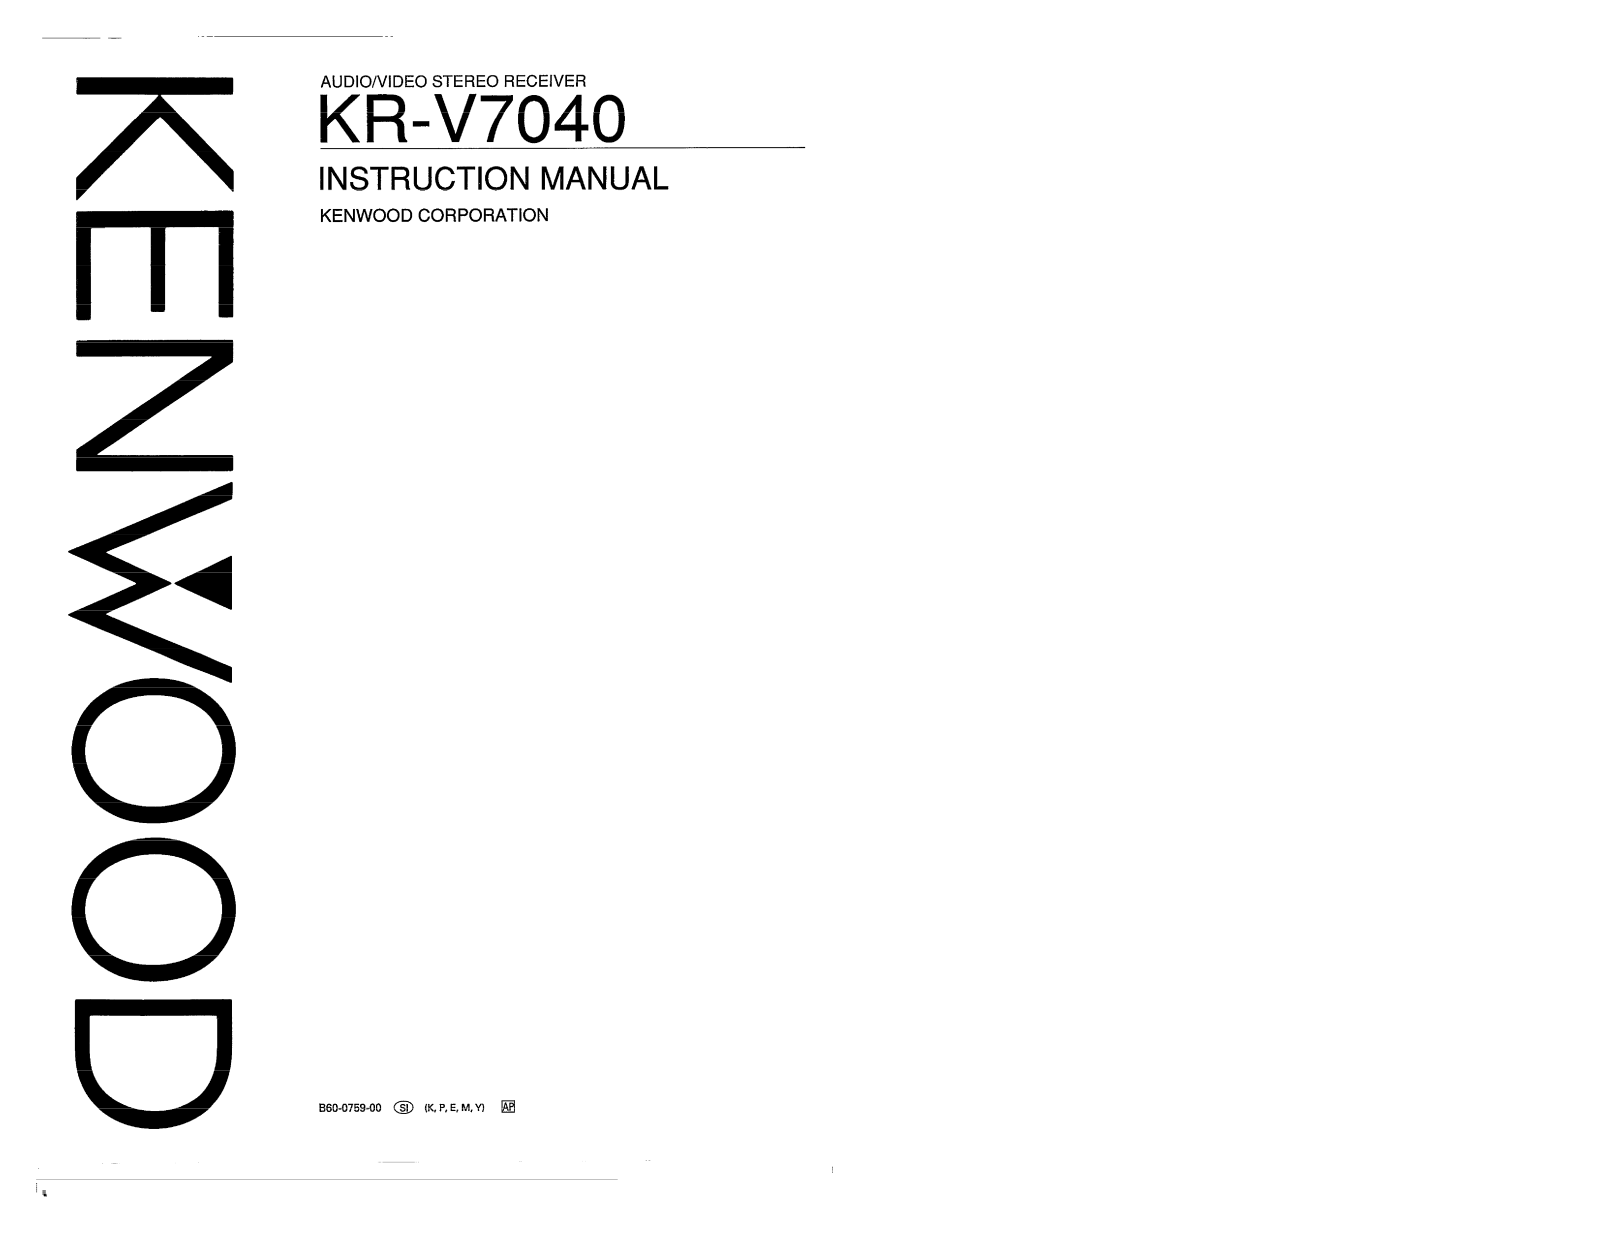 Kenwood KR-V7040 Owner's Manual